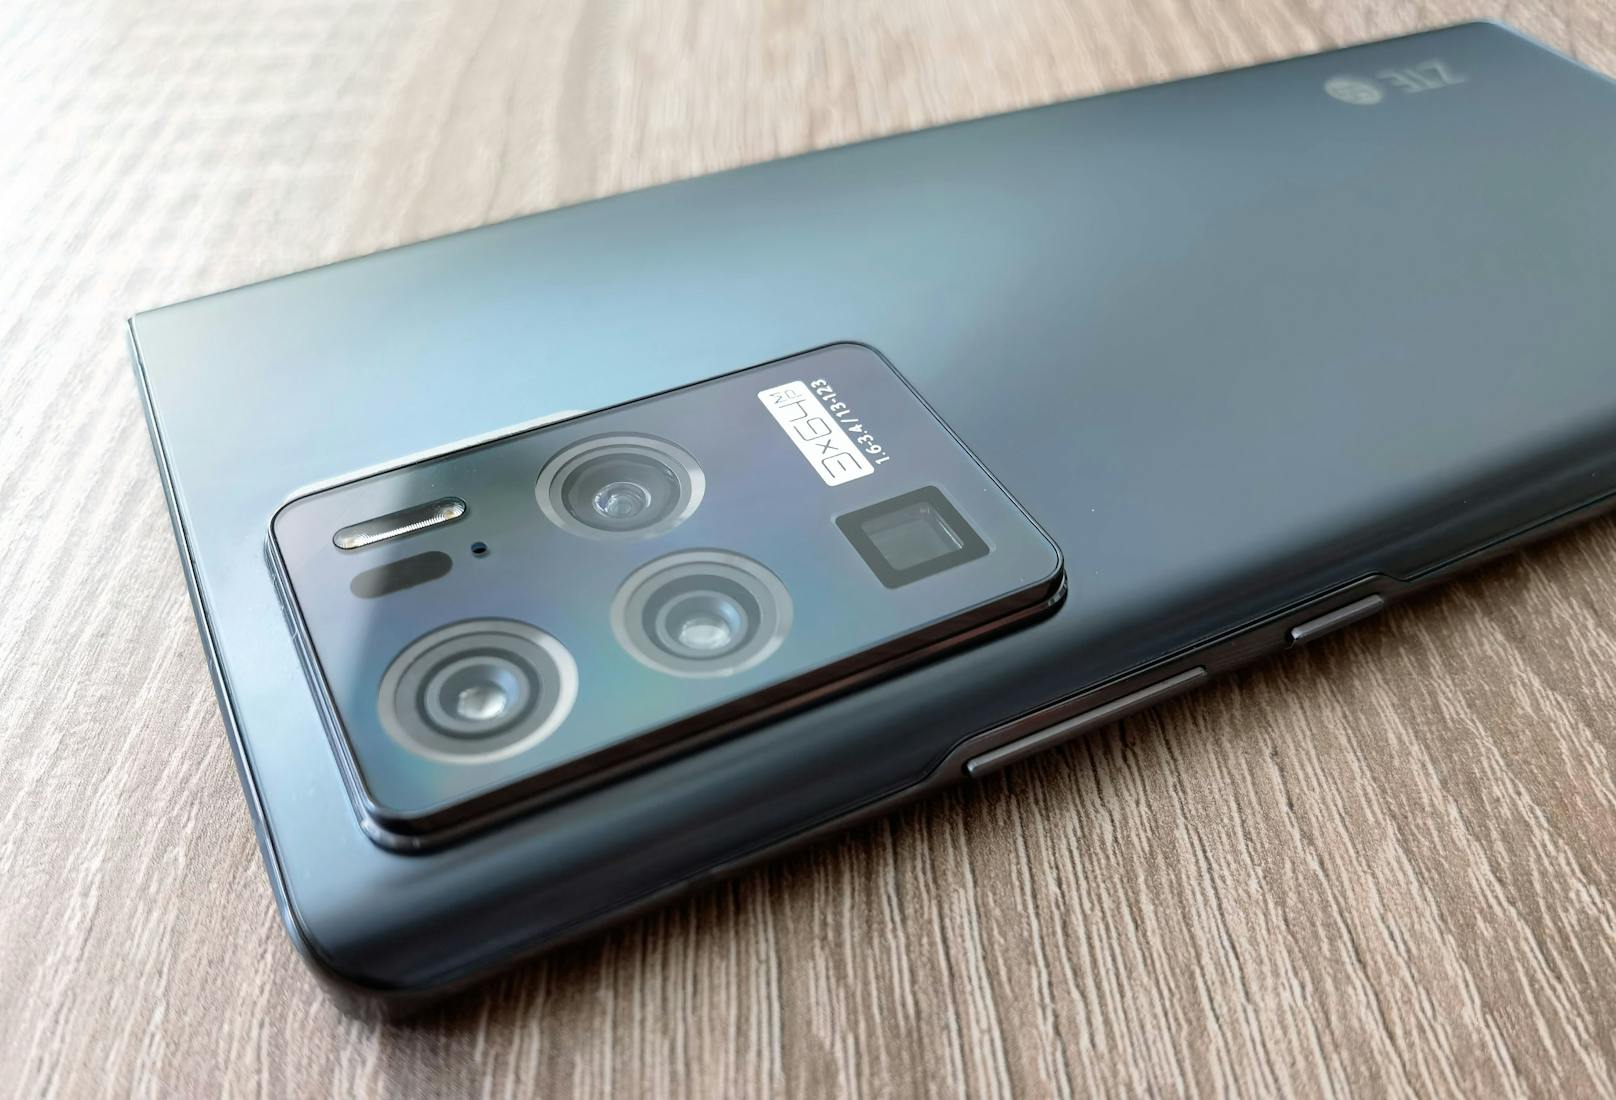 Hingucker des 161,53 x 72,96 x 8,0 Millimeter großen und rund 188 Gramm schweren Smartphones, das es nur in der Farbe Schwarz gibt, ist eindeutig das Kamera-Modul an der Rückseite.